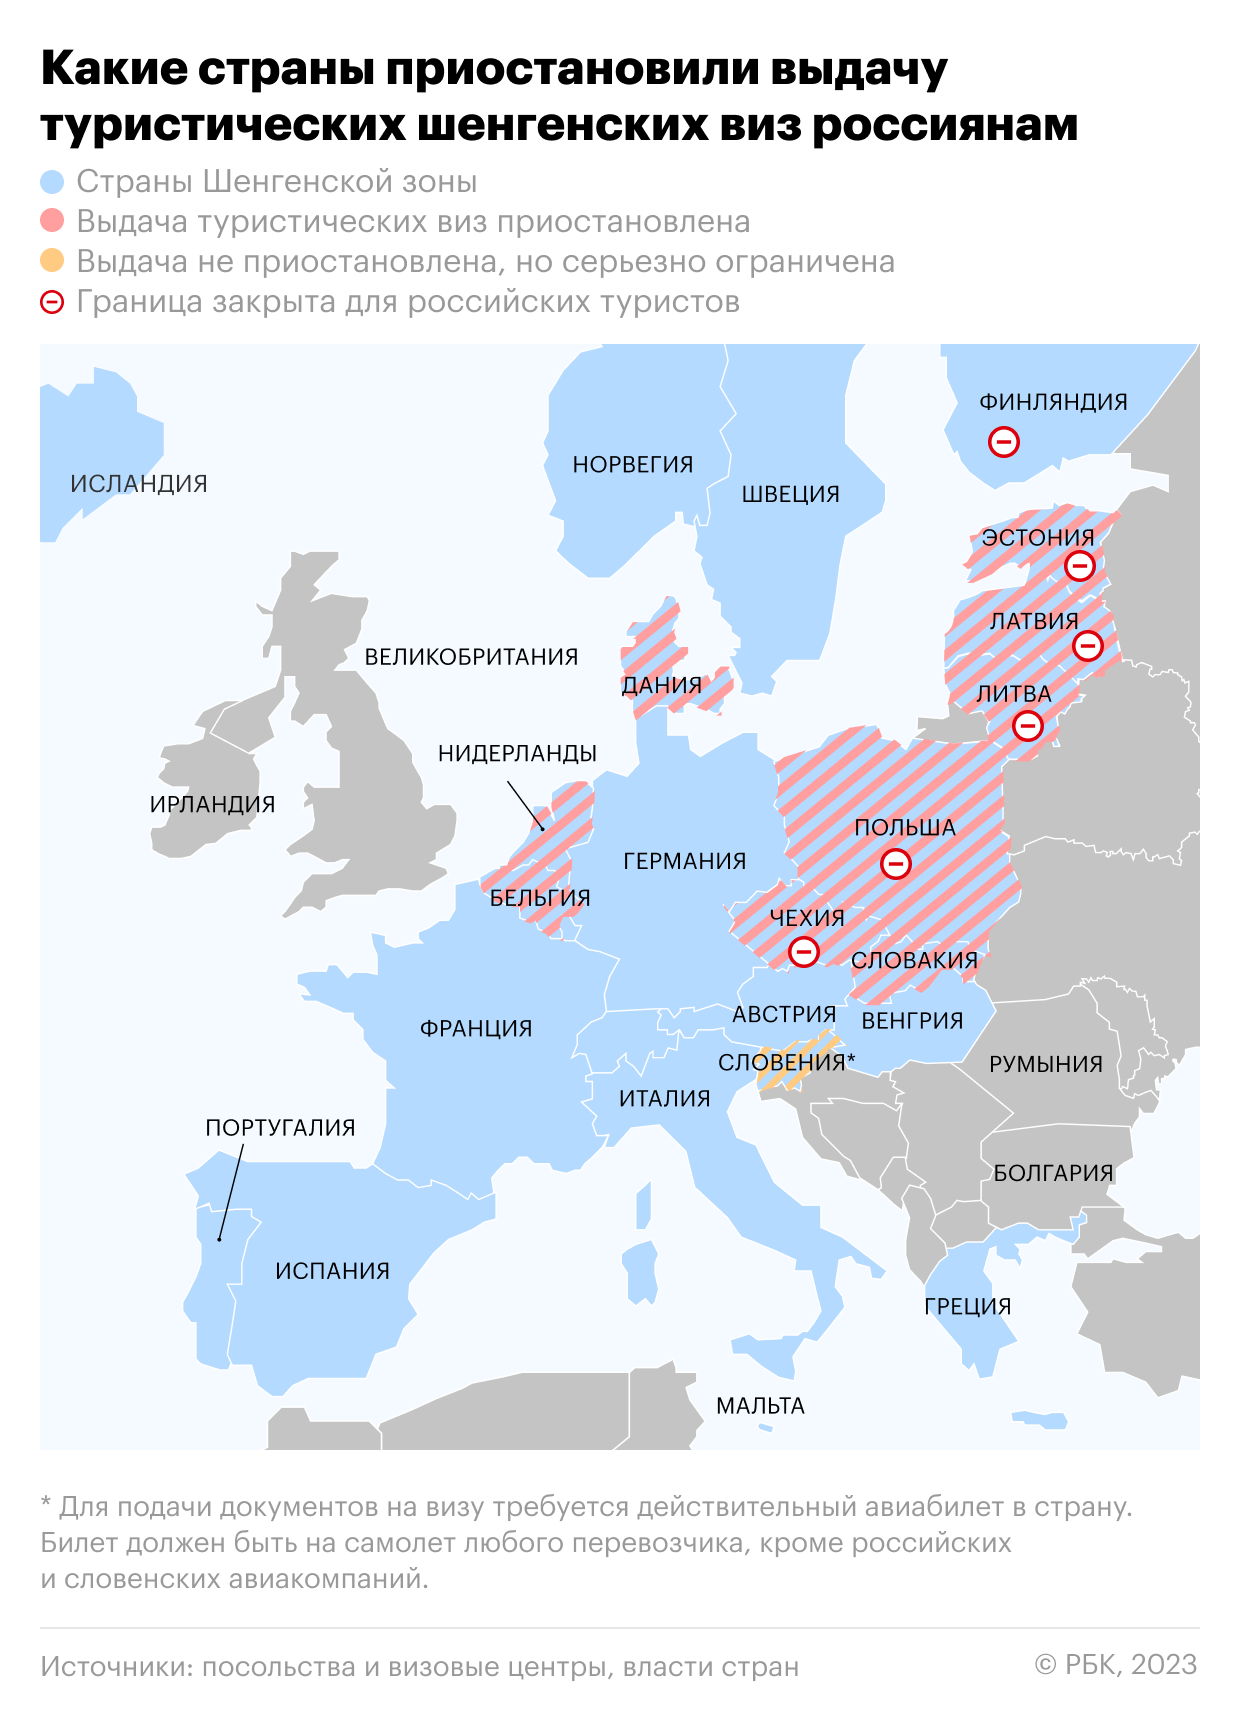 Эстония закроет границу для россиян с шенгенскими визами